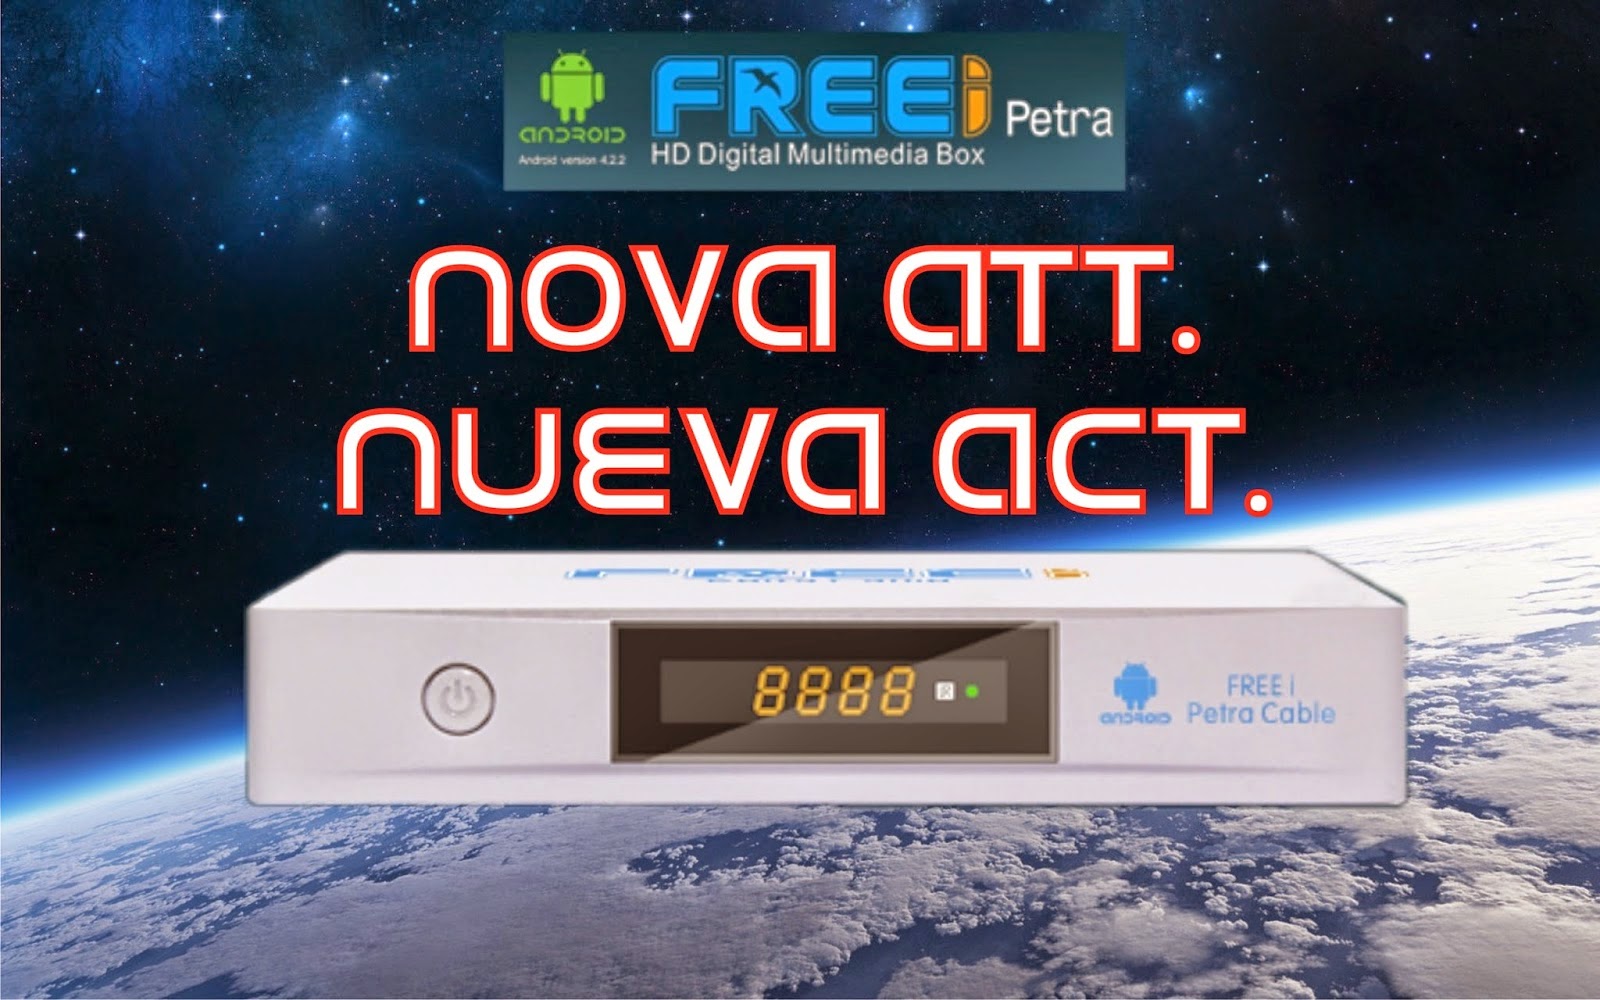 FREEI PETRA HD ANDROID CABLE NOVA ATUALIZAÇÃO - V 1.025 - 12/11/2014  FREEI%2BCABO